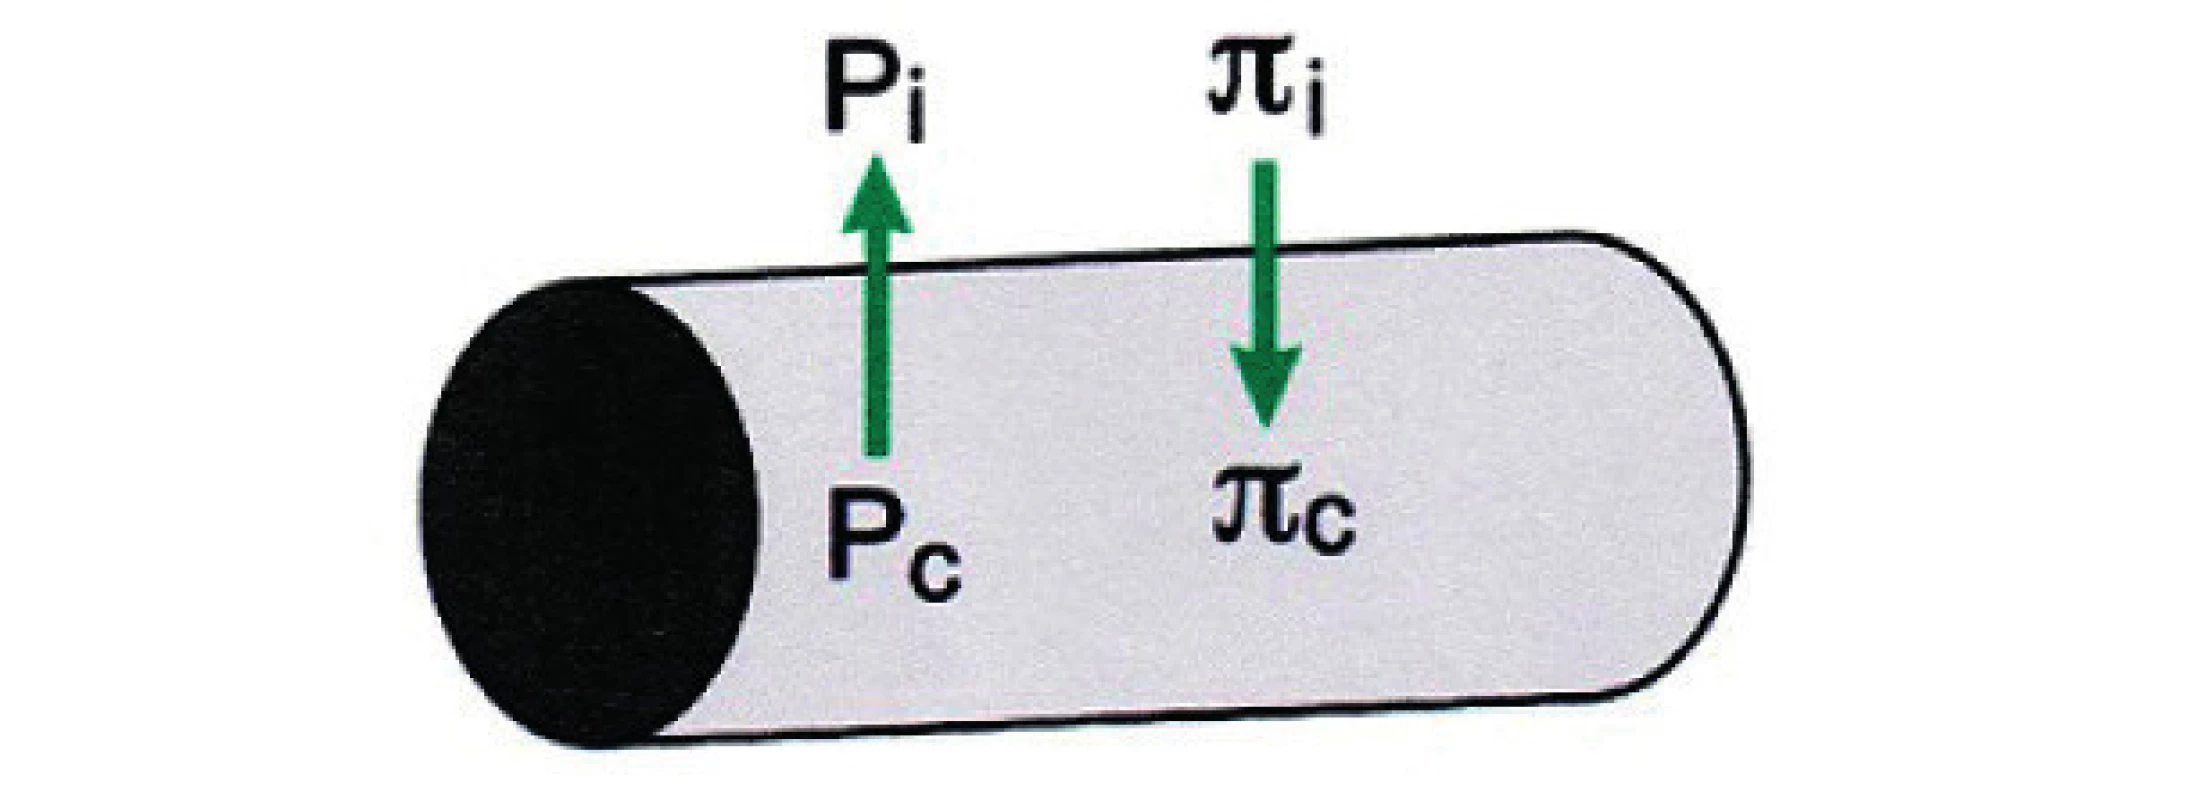 Reabsorpce a filtrace v kapiláře <br> NDF – Net Driving Force (tlak v Pa), Pc – hydrostatický tlak v kapilárách, Pi – intersticiální tlak v mezibuněčném prostoru, πc – kapilární osmotický tlak, πi – intersticiální osmotický tlak, σ – reflekční koeficient 